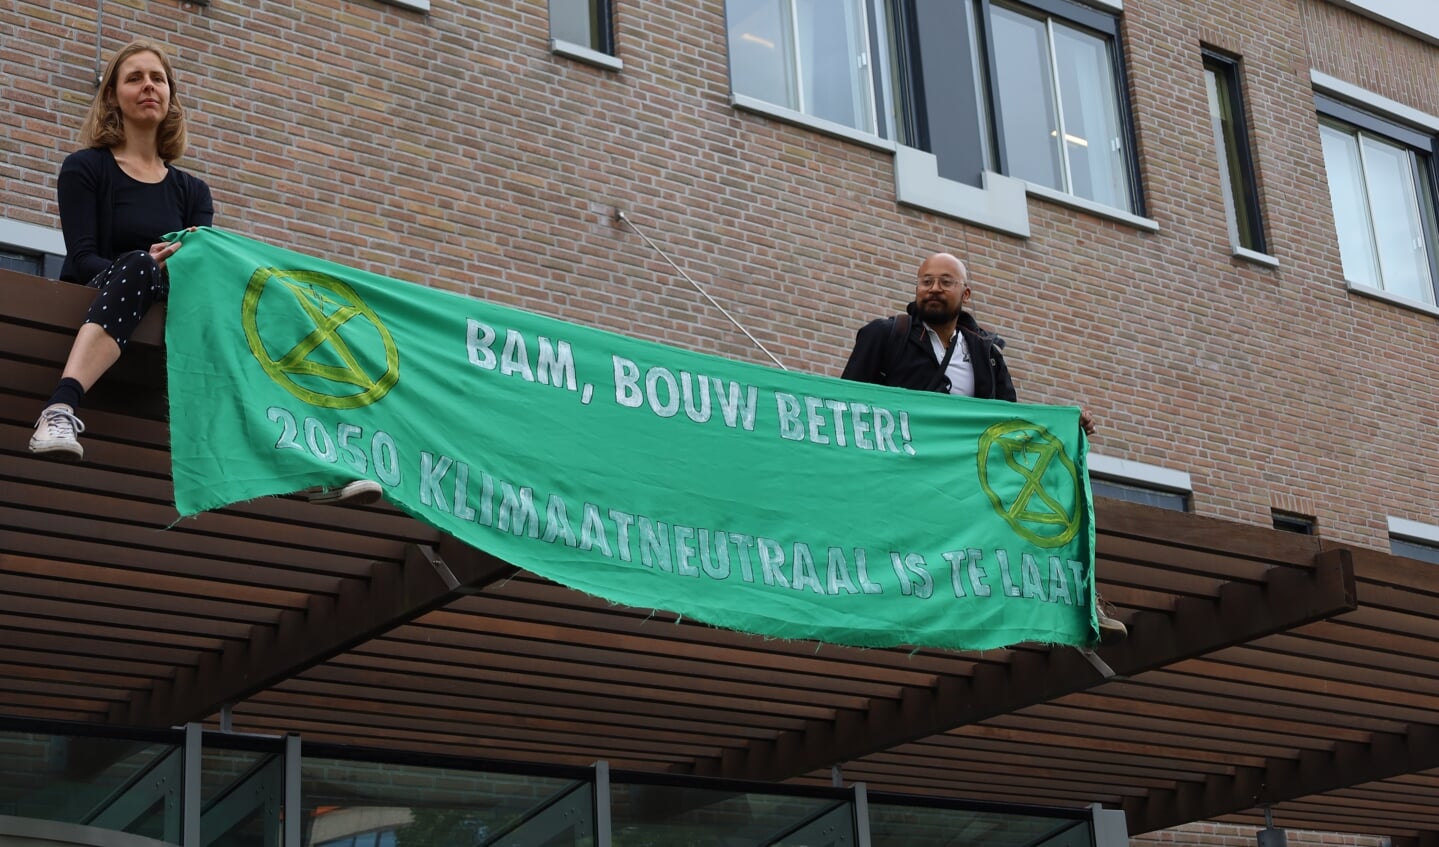 Twee christelijke klimaatactivisten houden een banner vast met de slogan: BAM, bouw beter! 2050 Klimaatneutraal is te laat.